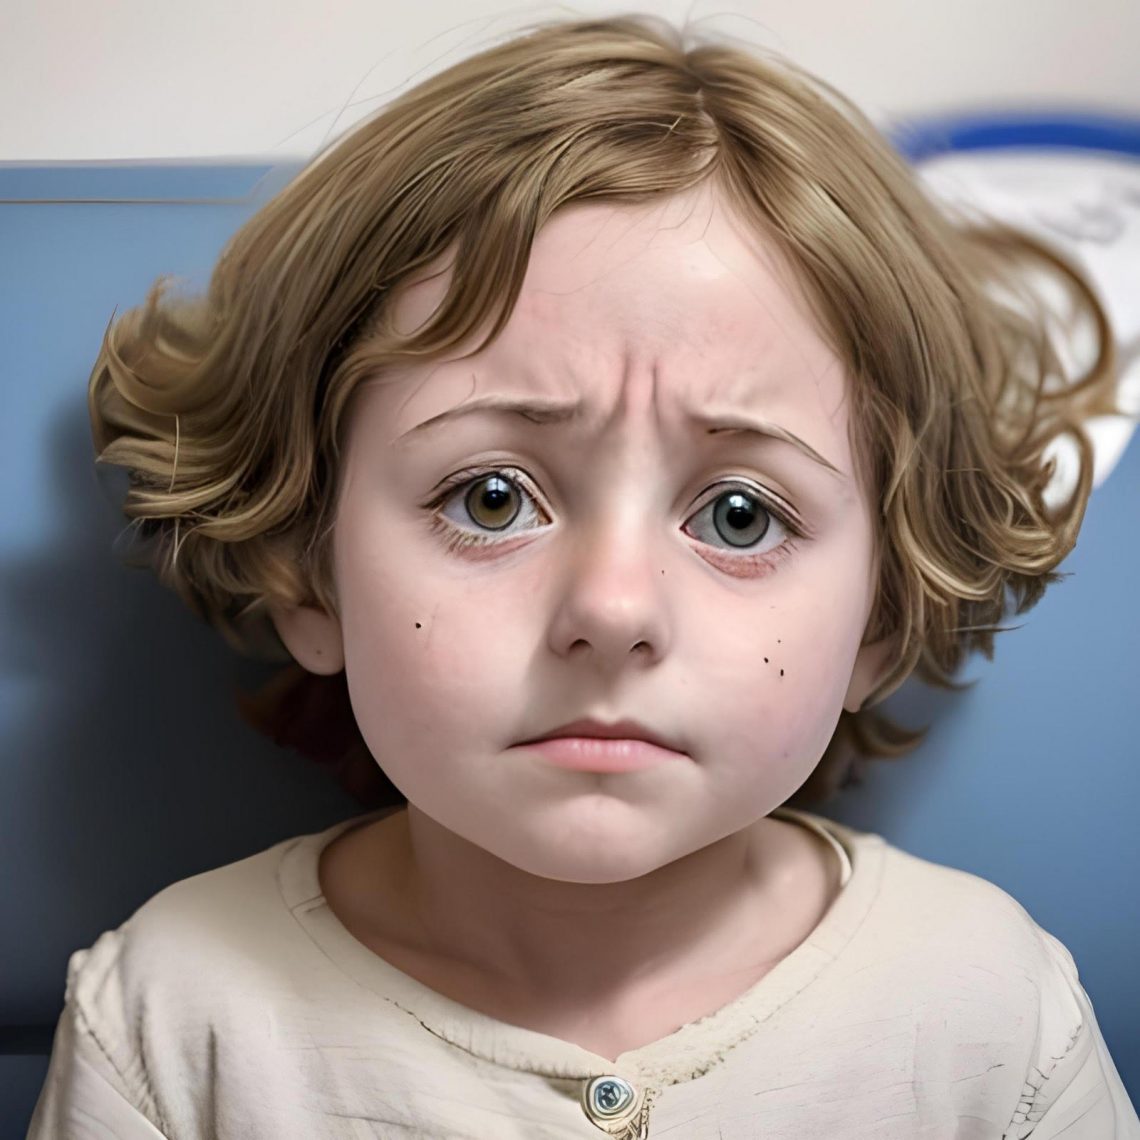 О первых симптомах менингита у детей рассказал алматинский врач